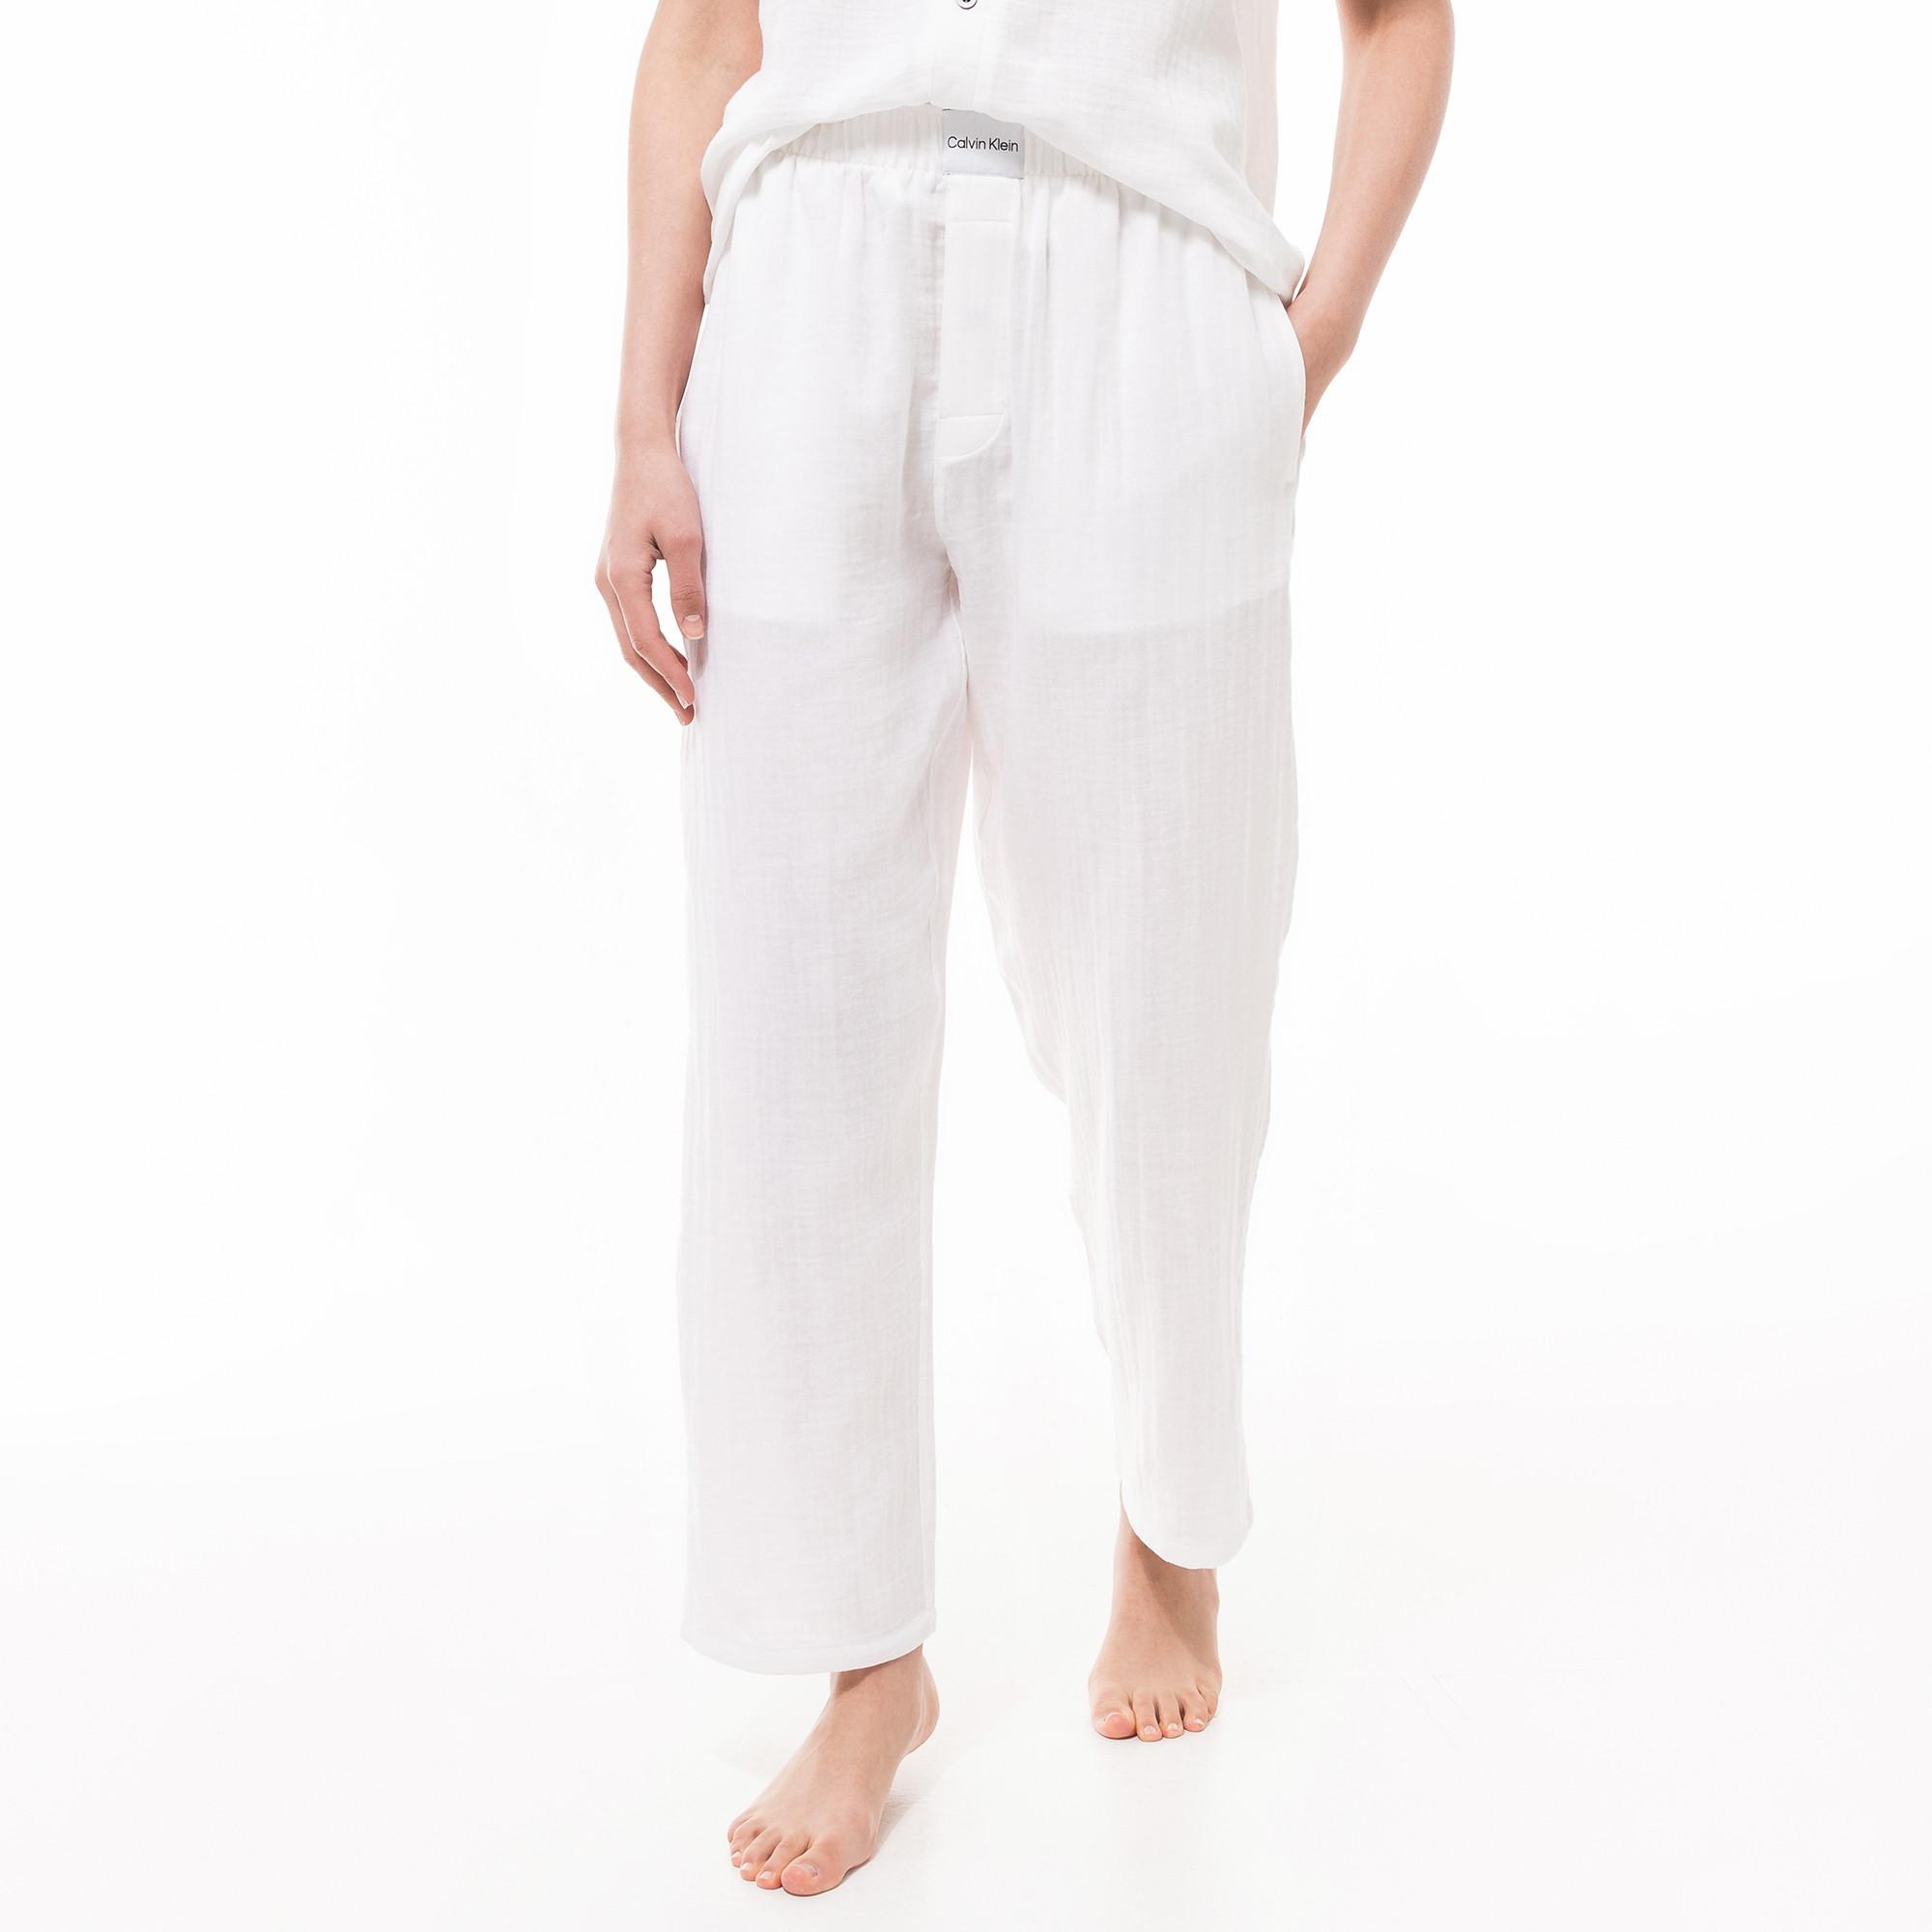 Calvin Klein TEXTURED COTTON Pantaloni pigiama, lunghi 